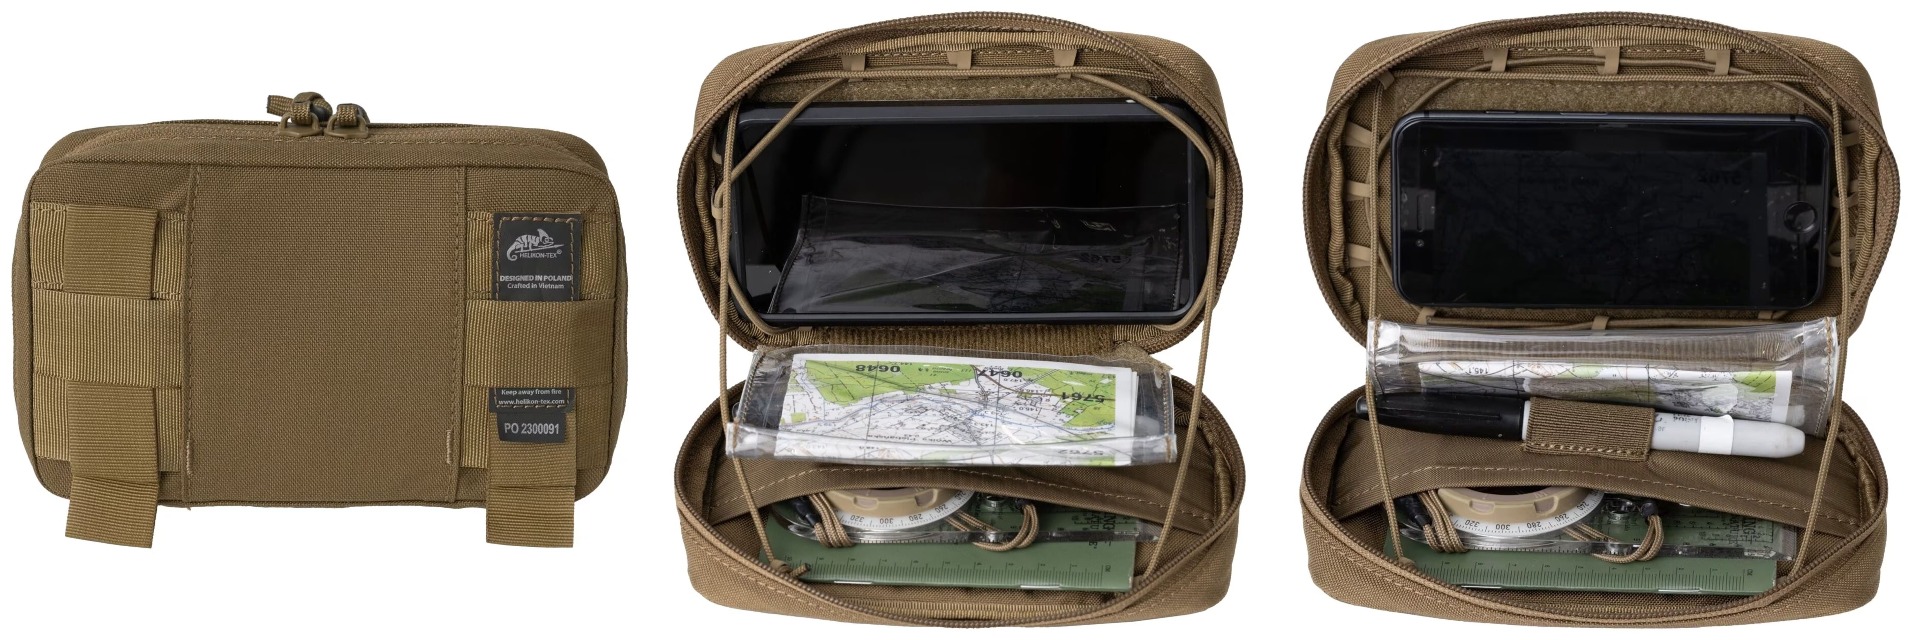 Kupi Helikon Guardian Admin torbico v multicamu za vojaške operacije in misije. Taktična torbica za vojaško opremljanje, idealna za vojaška oblačila in pripomočke.